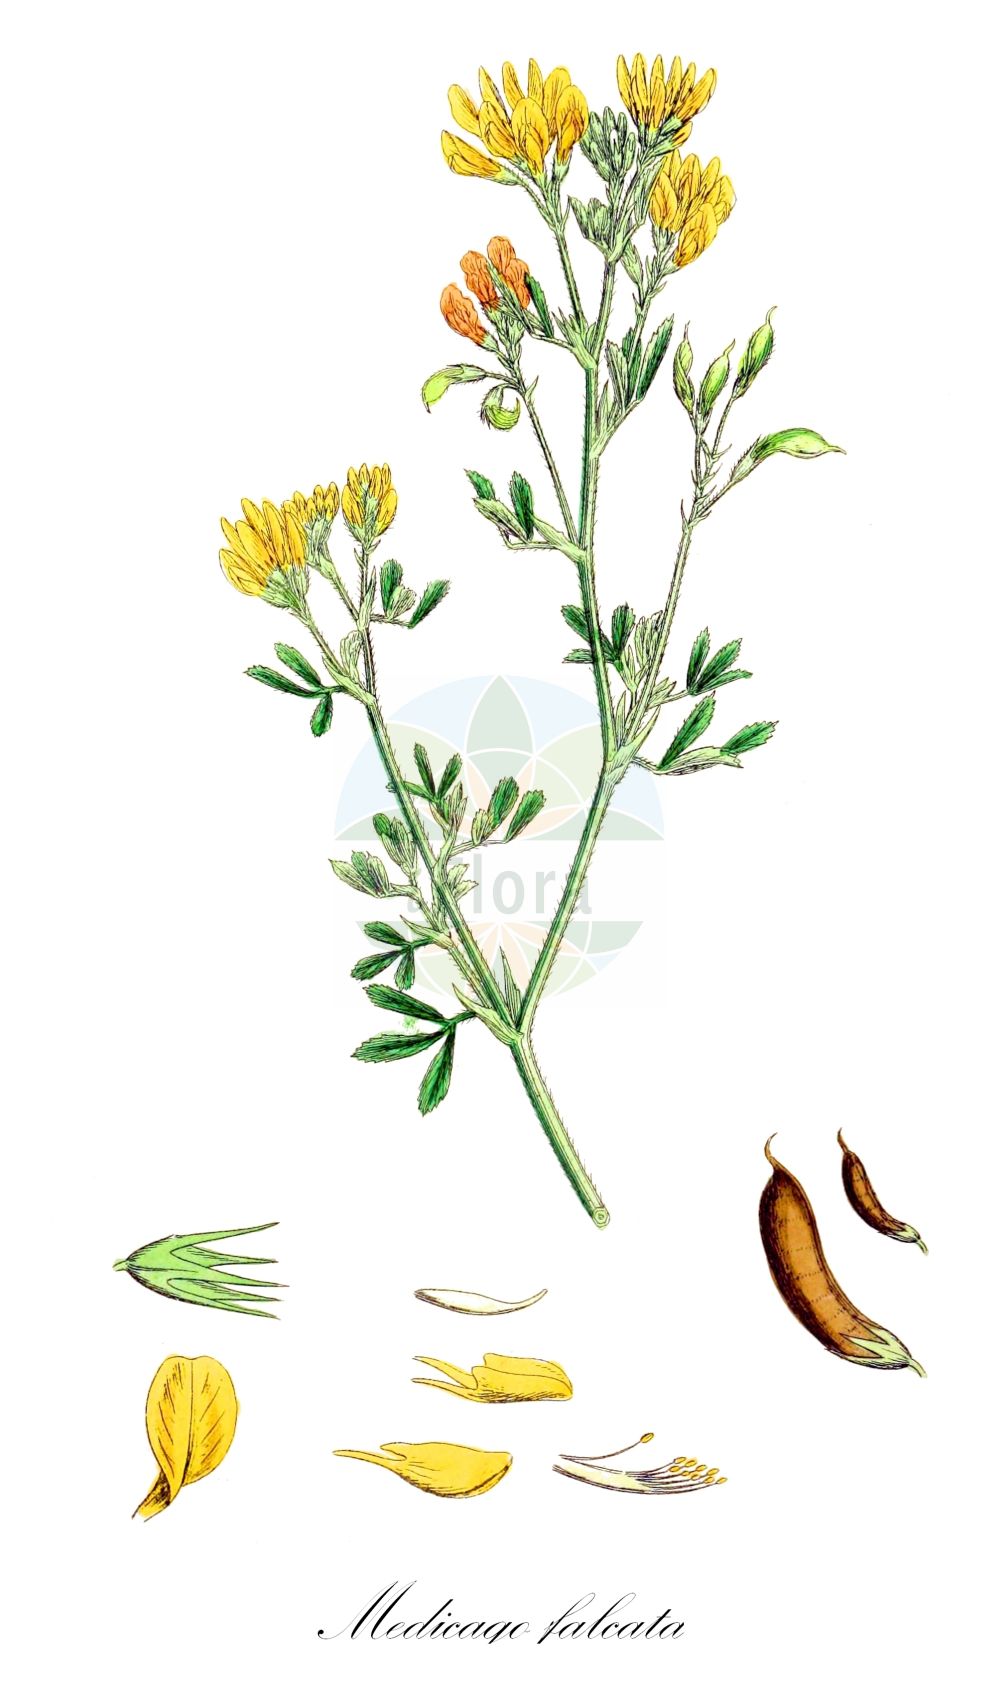 Historische Abbildung von Medicago falcata (Sichelklee - Sickle Medick). Das Bild zeigt Blatt, Bluete, Frucht und Same. ---- Historical Drawing of Medicago falcata (Sichelklee - Sickle Medick). The image is showing leaf, flower, fruit and seed.(Medicago falcata,Sichelklee,Sickle Medick,Medicago aurantiaca,Medicago borealis,Medicago falcata,Medicago falcata L. subsp.,Medicago glandulosa,Medicago kotovii,Medicago procumbens,Medicago quasifalcata,Medicago romanica,Medicago tenderiensis,Sichelklee,Bastard-Luzerne,Blaue Luzerne,Gelbe Luzerne,Gewoehnliche Luzerne,Sichel-Schneckenklee,Sickle Medick,Yellow Alfalfa,Yellow-flower Lucerne,Medicago,Schneckenklee,Alfalfa,Fabaceae,Schmetterlingsblütler,Pea family,Blatt,Bluete,Frucht,Same,leaf,flower,fruit,seed,Sowerby (1790-1813))